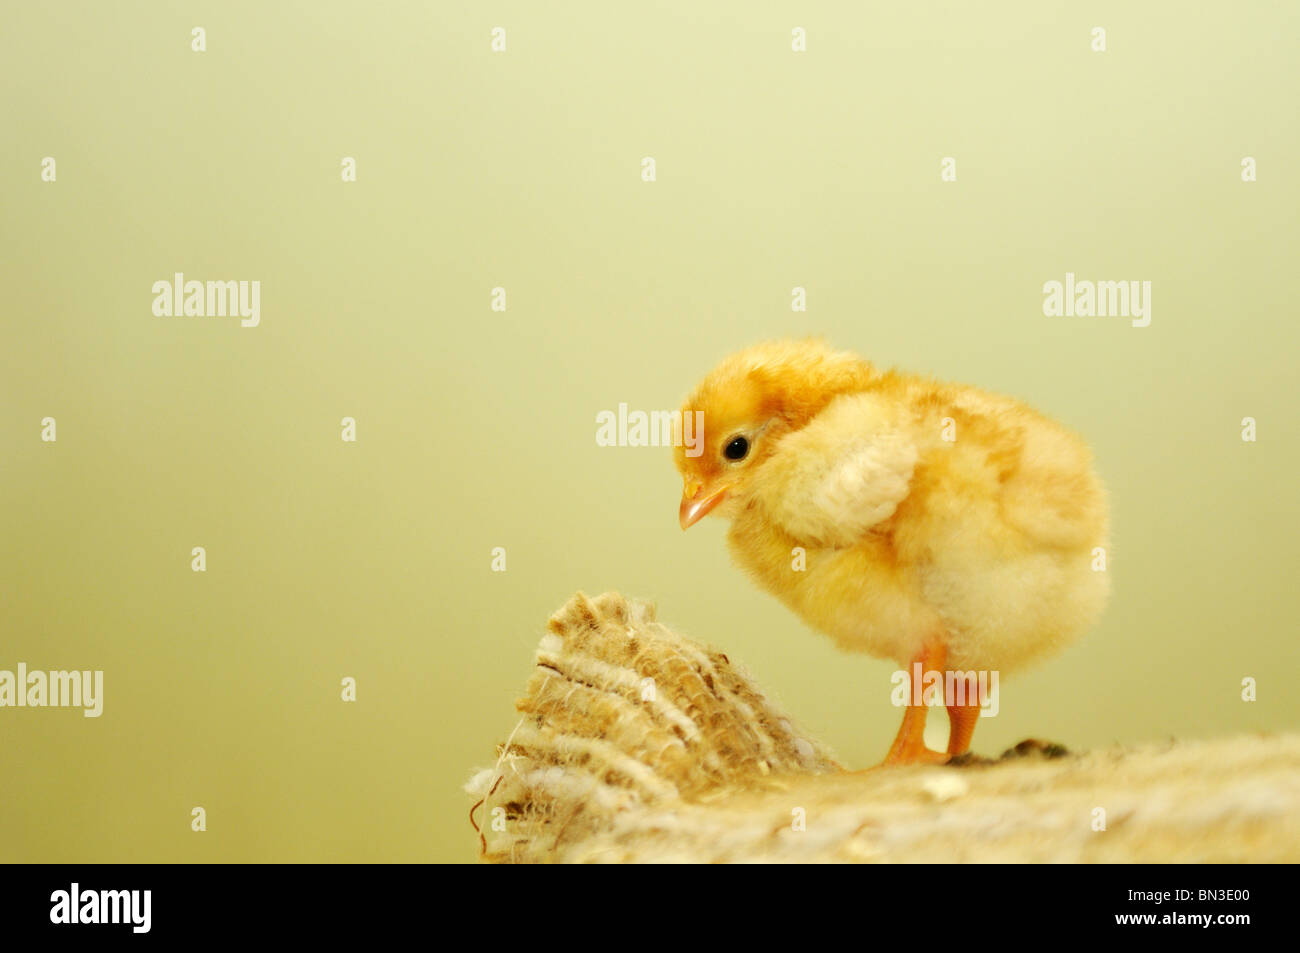 Chick contre fond jaune, close-up Banque D'Images